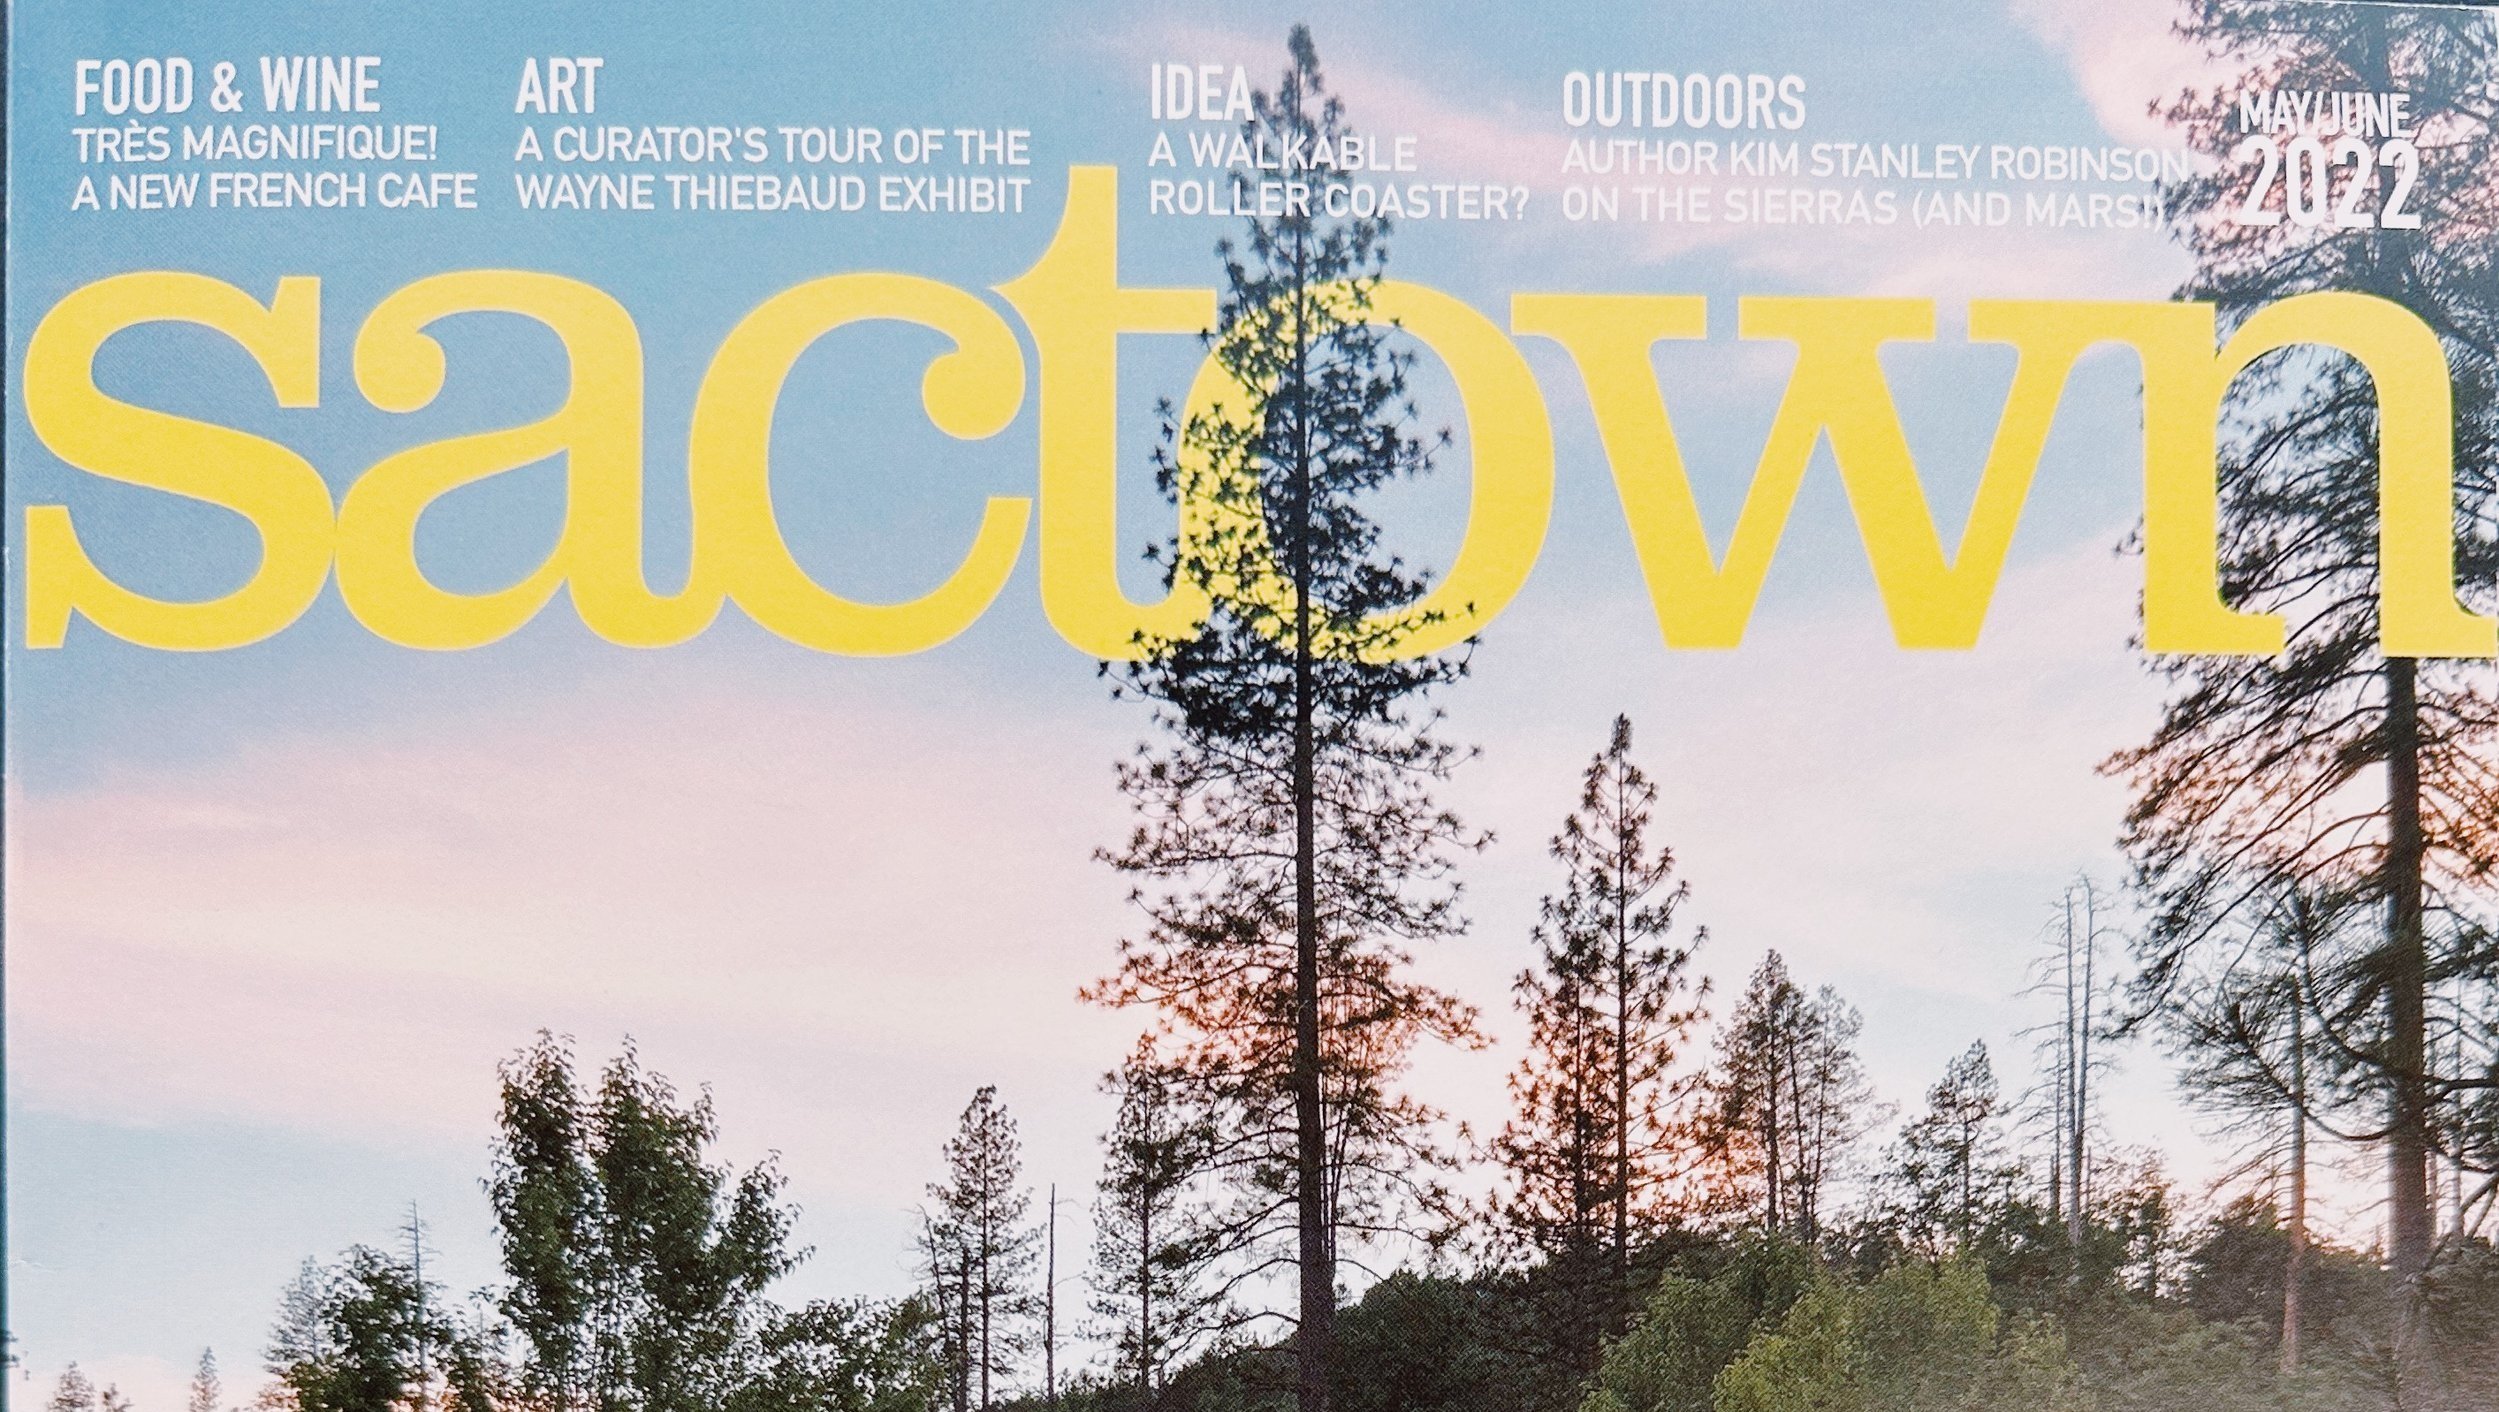 The Coast Ridge + Sactown Magazine 